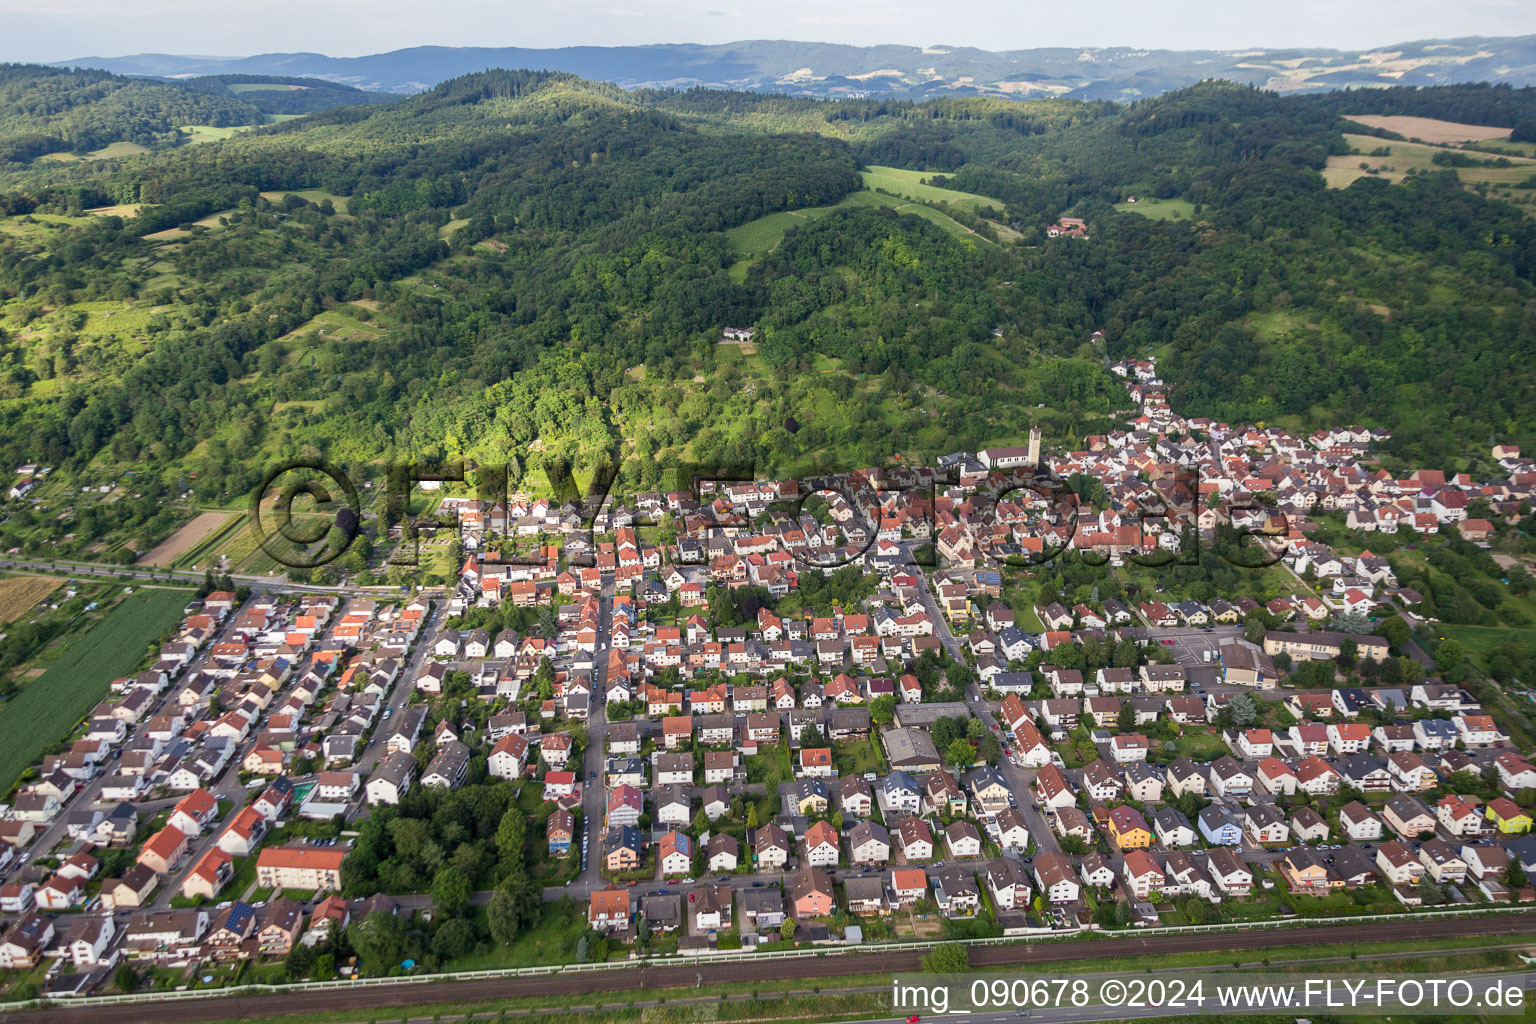 Luftbild von Dorf - Ansicht am Rande von landwirtschaftlichen Feldern und Nutzflächen in Sulzbach in Weinheim im Bundesland Baden-Württemberg, Deutschland